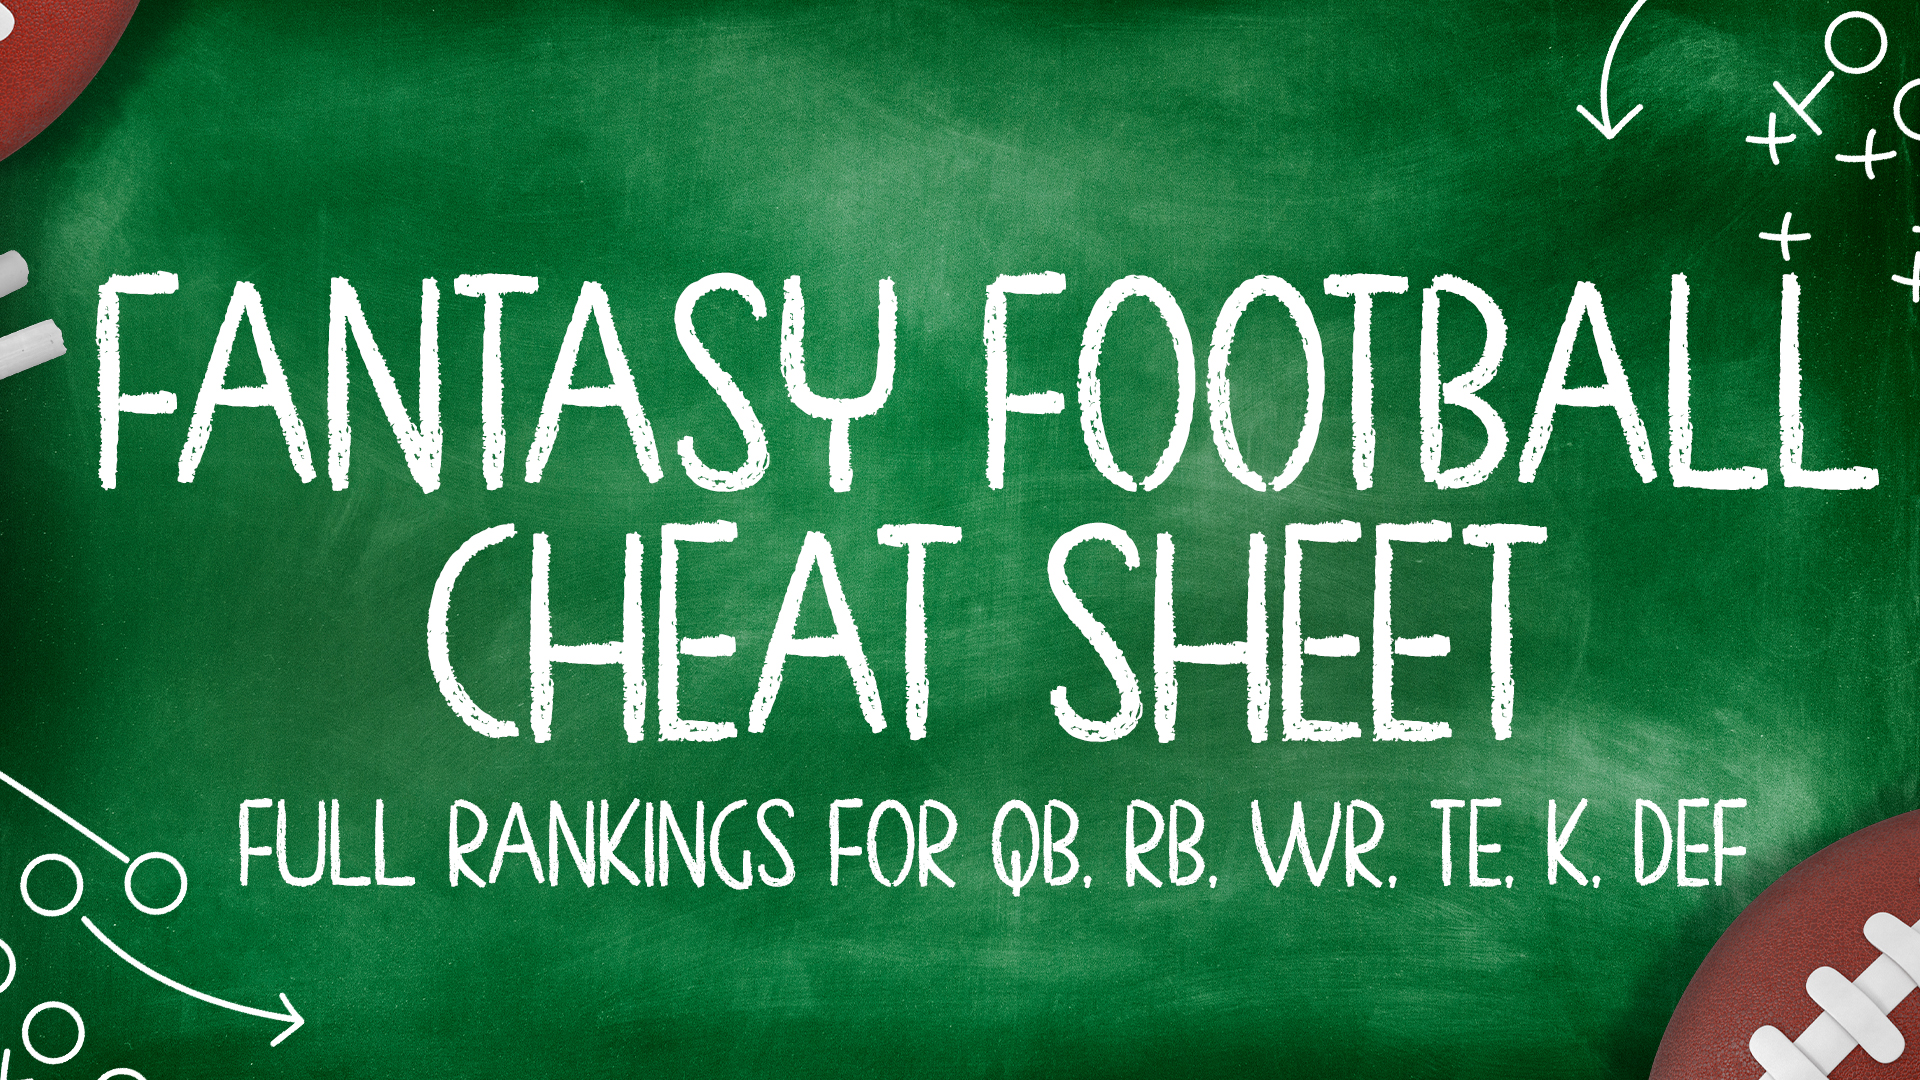 fantasy football fantasy cheat sheet